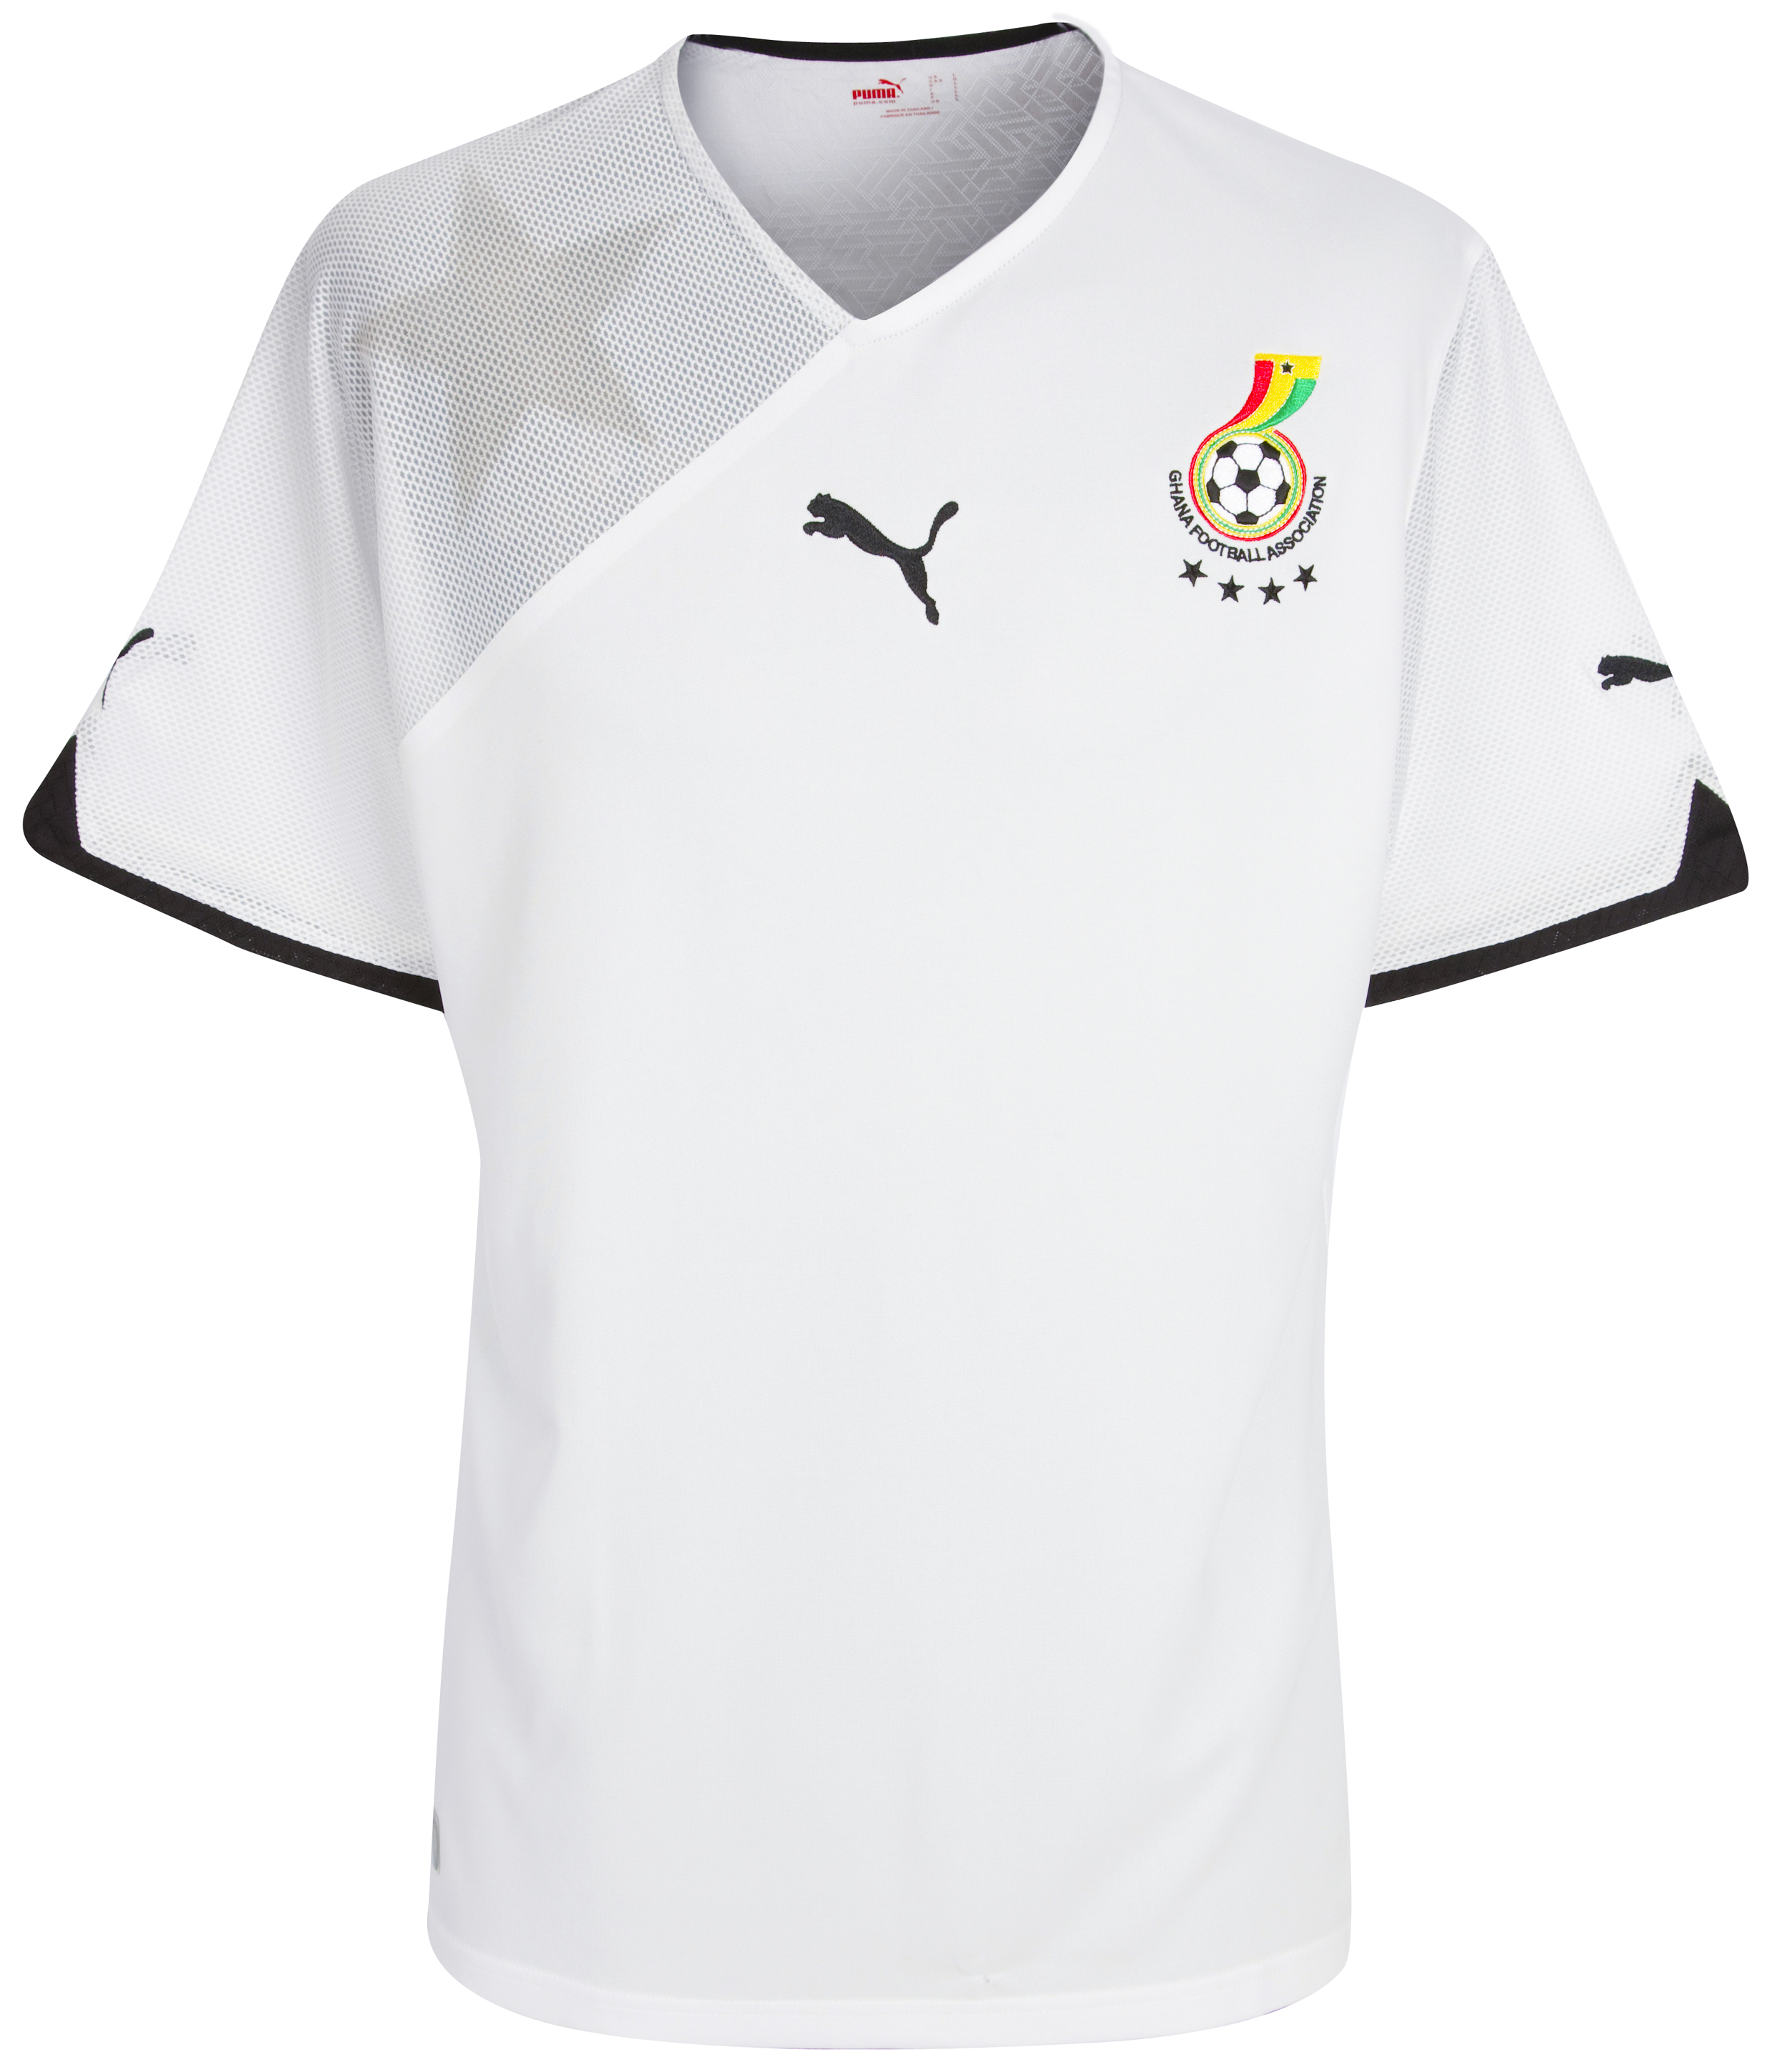 الملابس الرسمية لكأس العالم 2010 Kb-60874